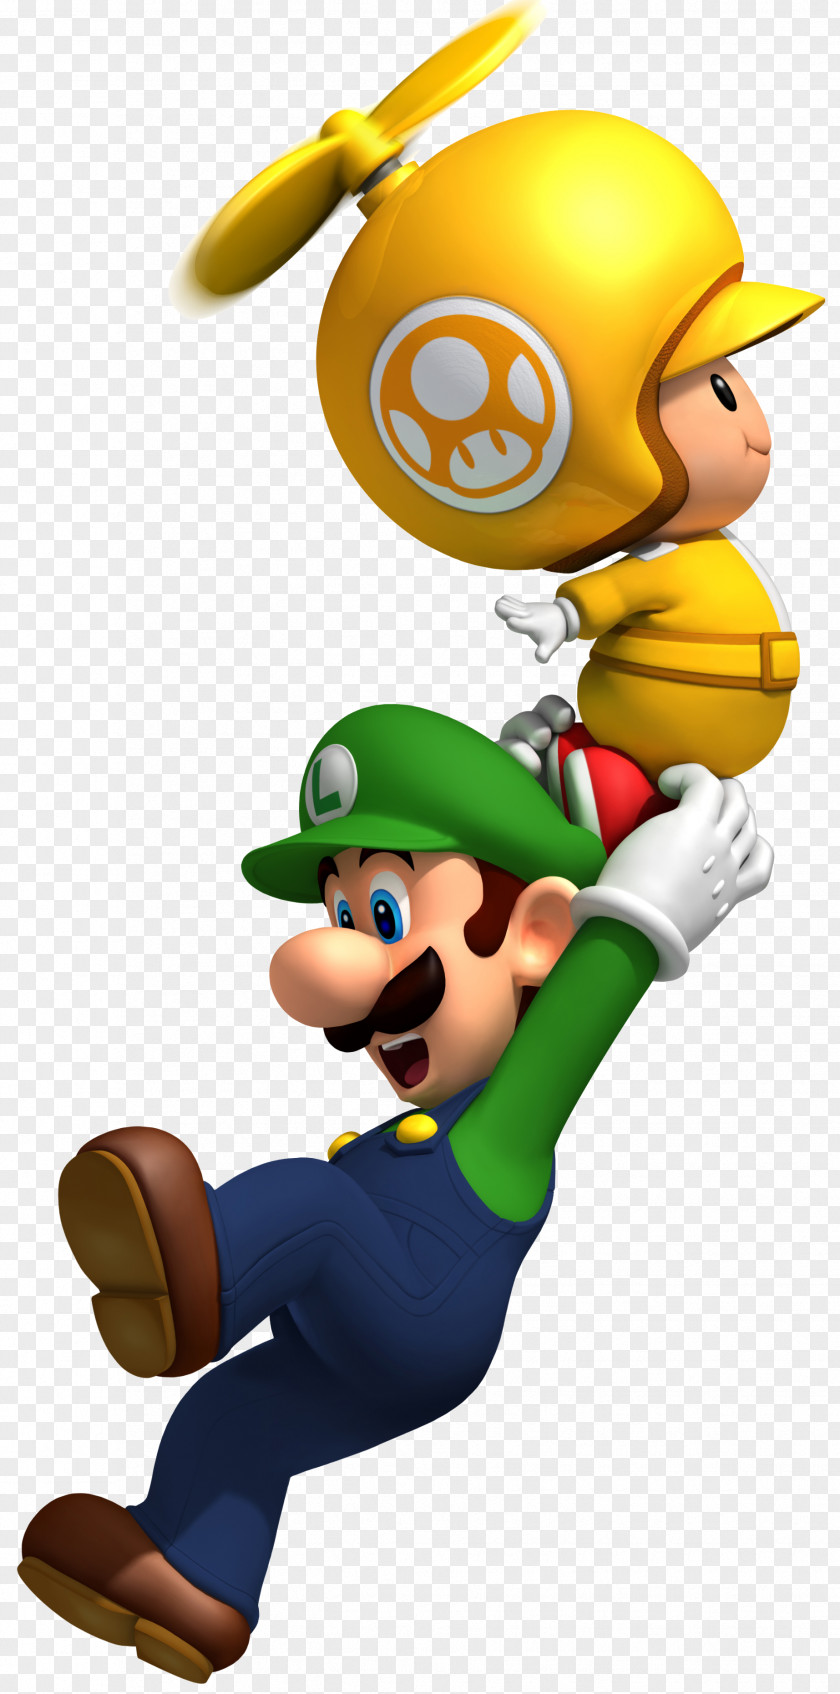 Mario New Super Bros. Wii U PNG